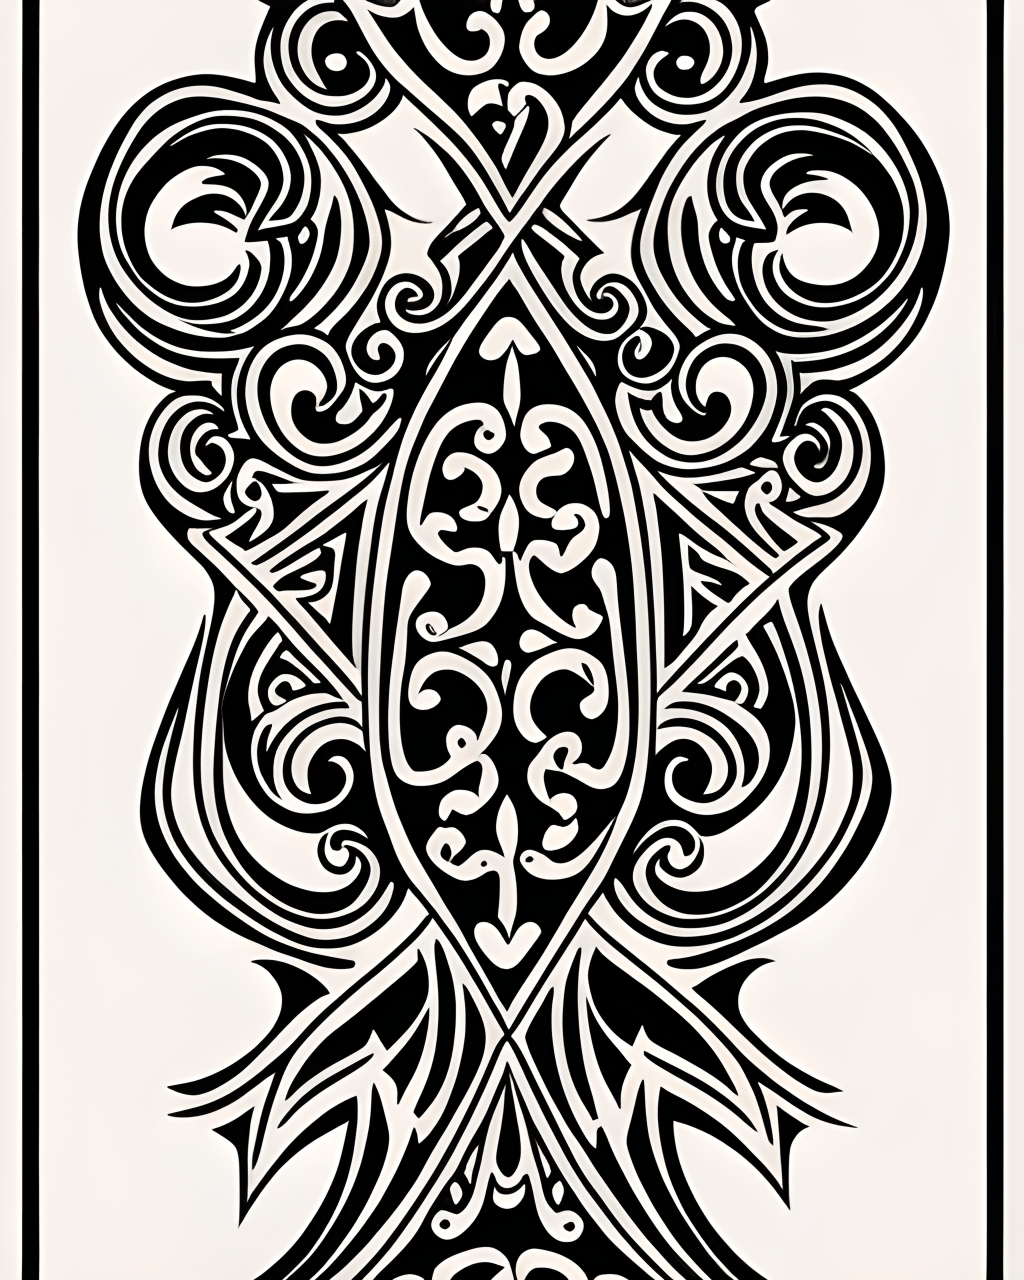 Plantilla de tatuaje vintage con volutas, diseño de líneas negras